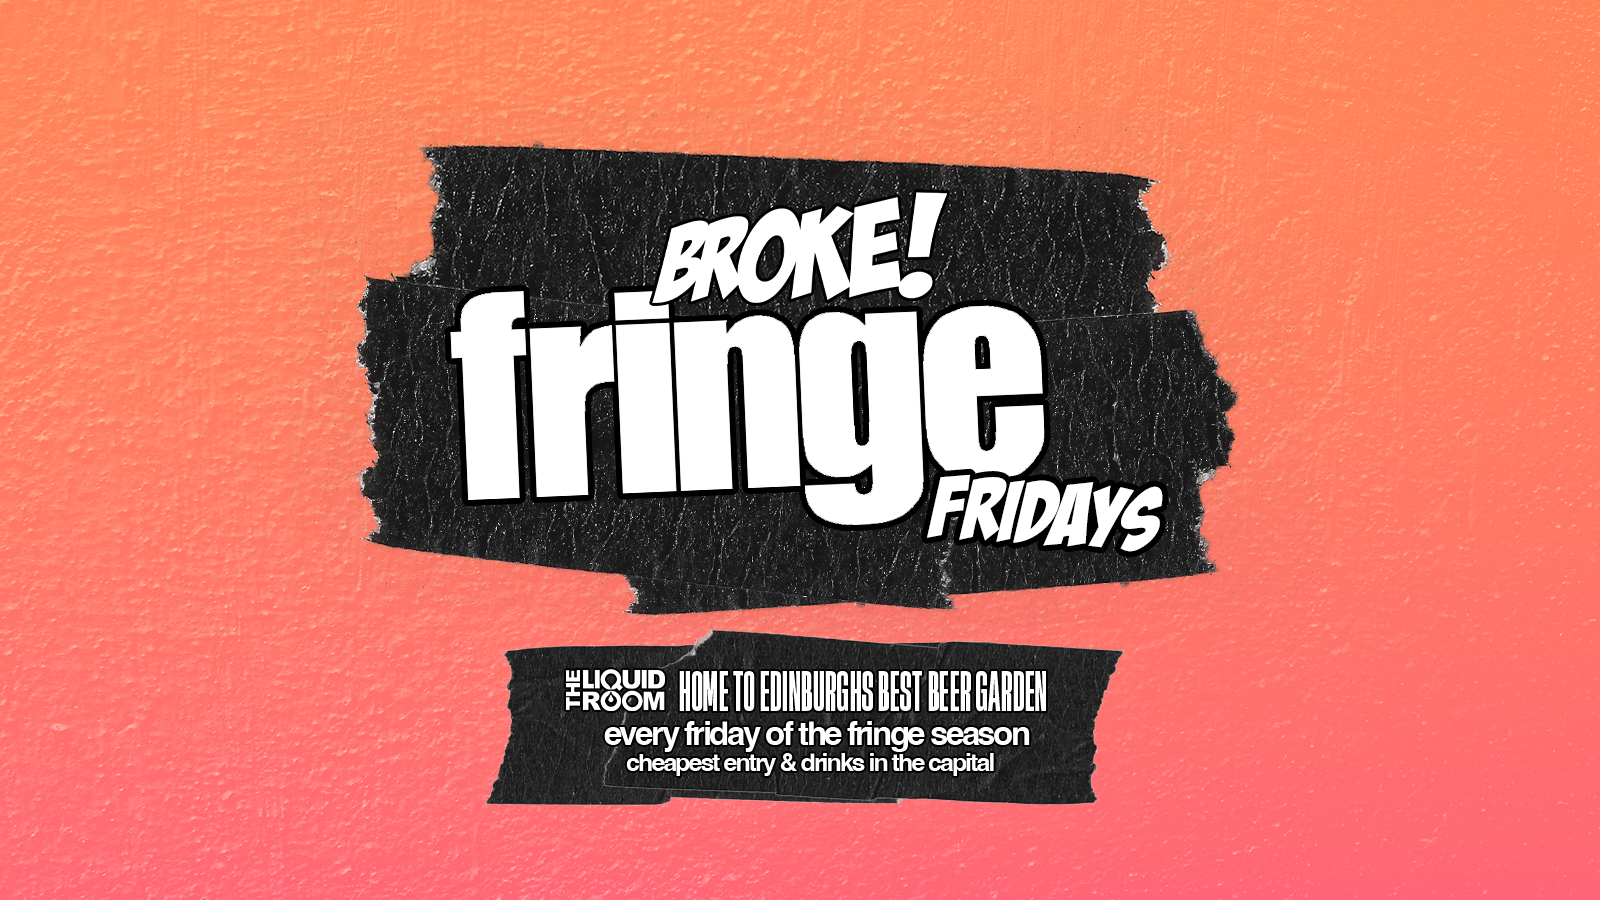 BROKE! FRIDAYS | FRINGE FRIDAYS | 2ND AUG